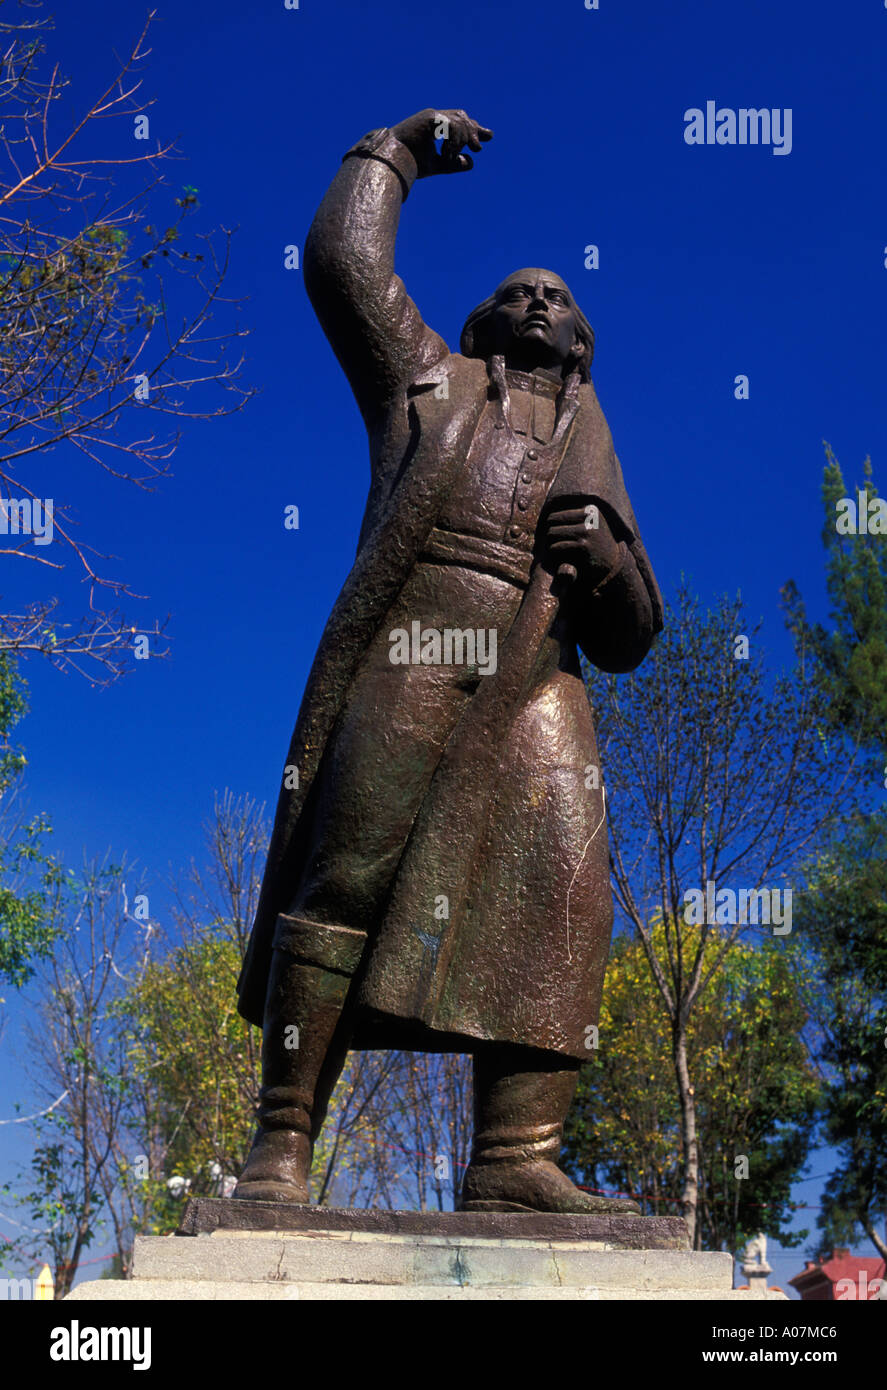 statue of Miguel Hidalgo, Miguel Hidalgo statue, statue, Miguel Hidalgo, Plaza Hidalgo, Coyoacan, Mexico City, Federal District, Mexico Stock Photo